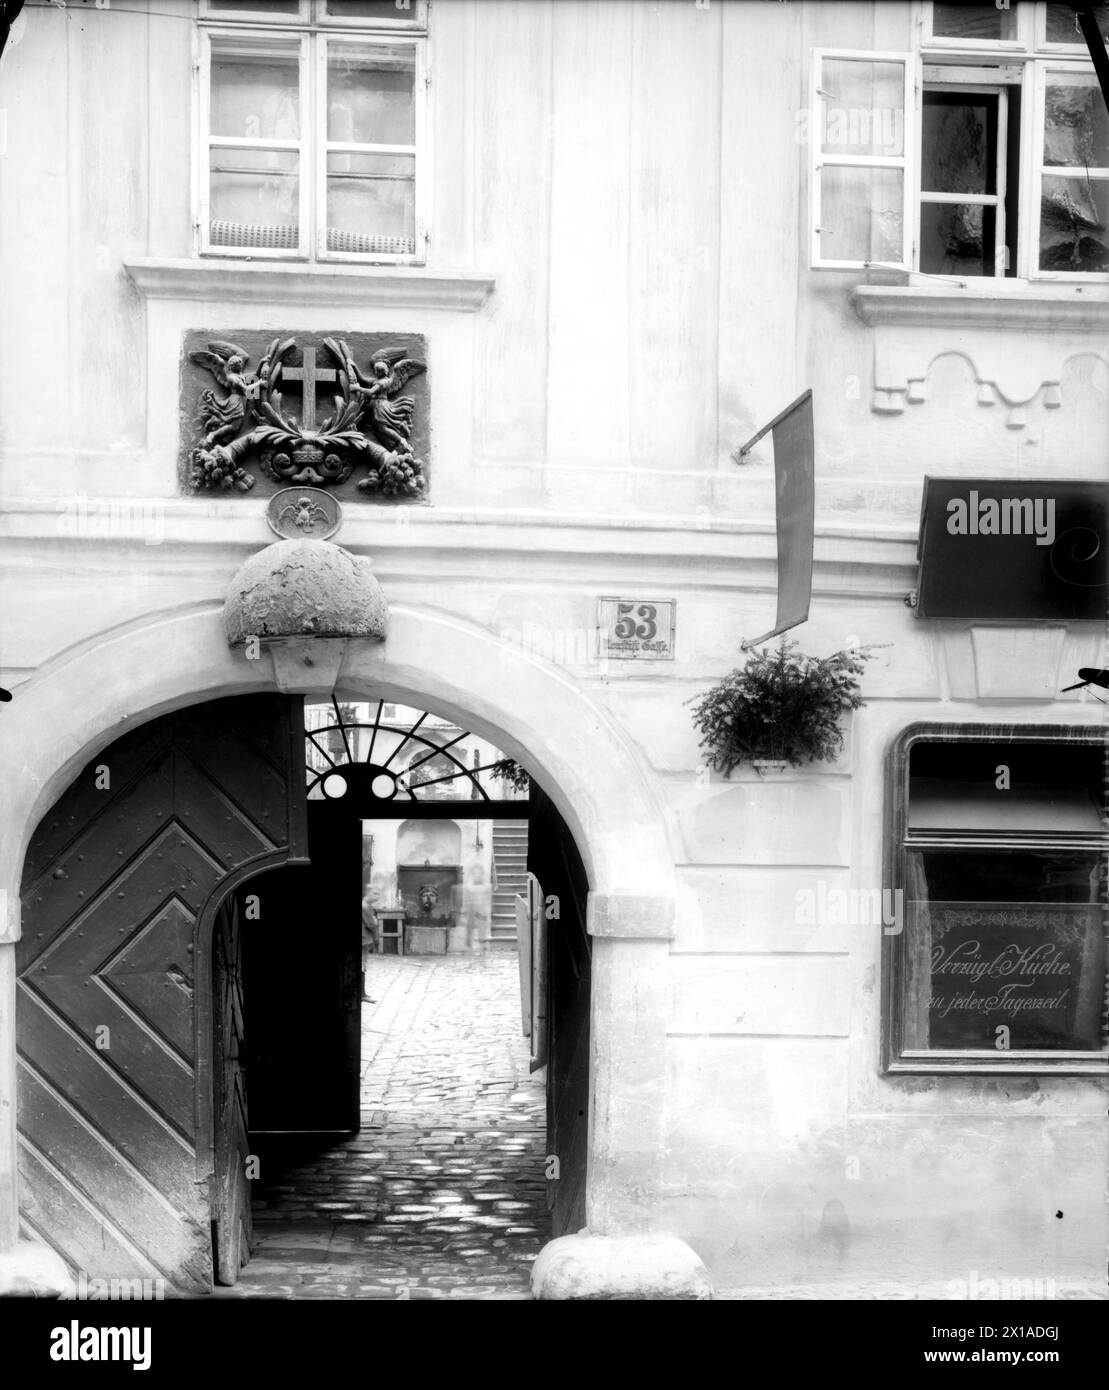 Wien 7, Neustiftgasse (Neustift Alley) 53, Torblick mit Blick in den Hof (Wandbrunnen mit Maske), 1899 - 18990101 PD0736 - Rechteinfo: Rights Managed (RM) Stockfoto